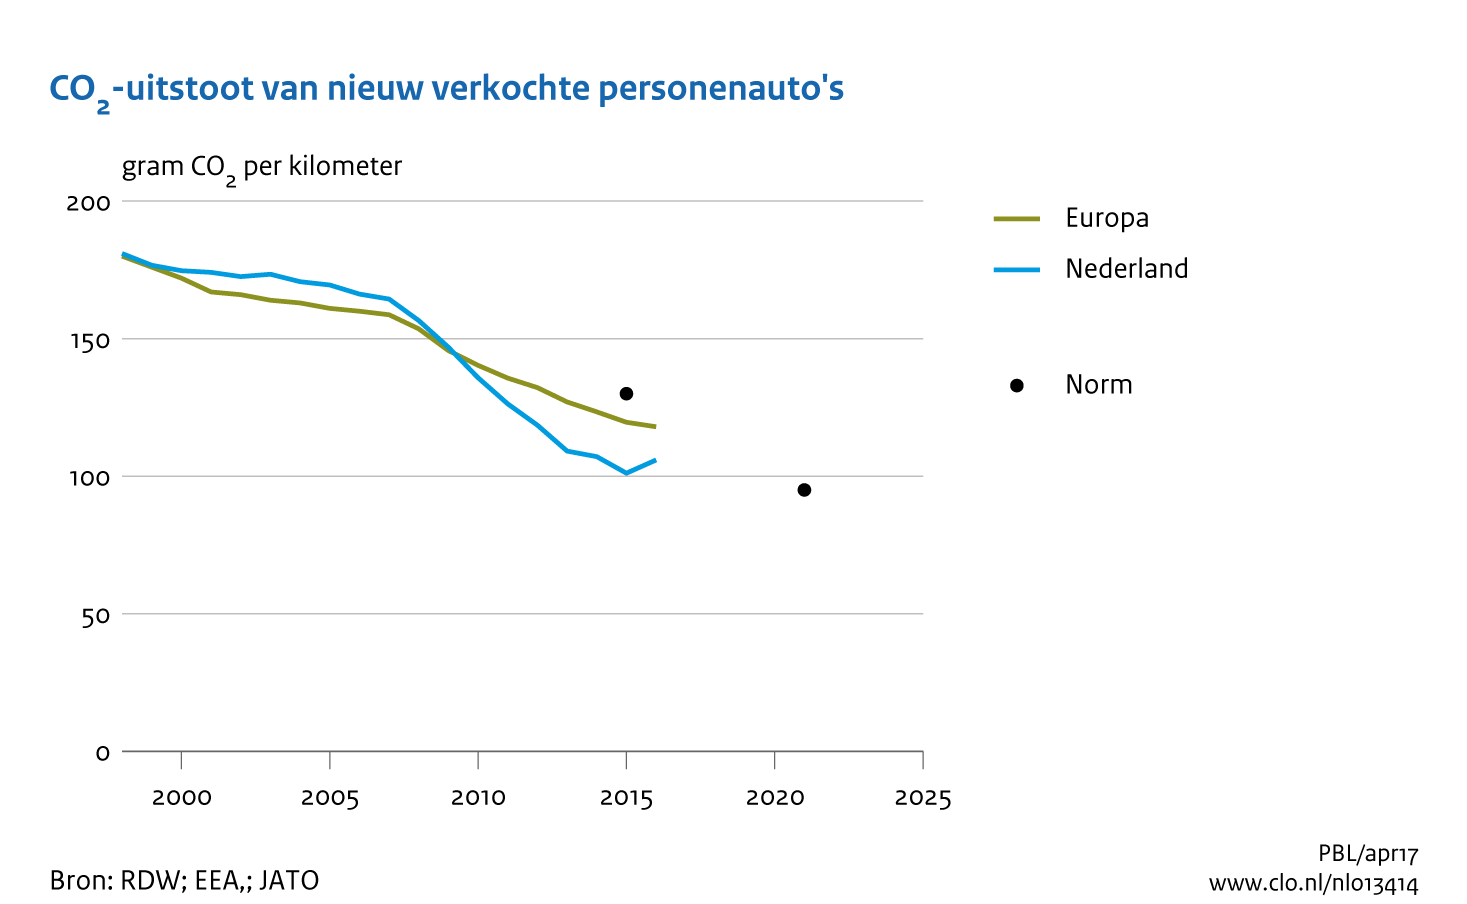 Figuur CO2-uitstoot (g/km) van nieuwe personenauto's in Nederland en Europa, op basis van Europese typegoedkeuring.. In de rest van de tekst wordt deze figuur uitgebreider uitgelegd.